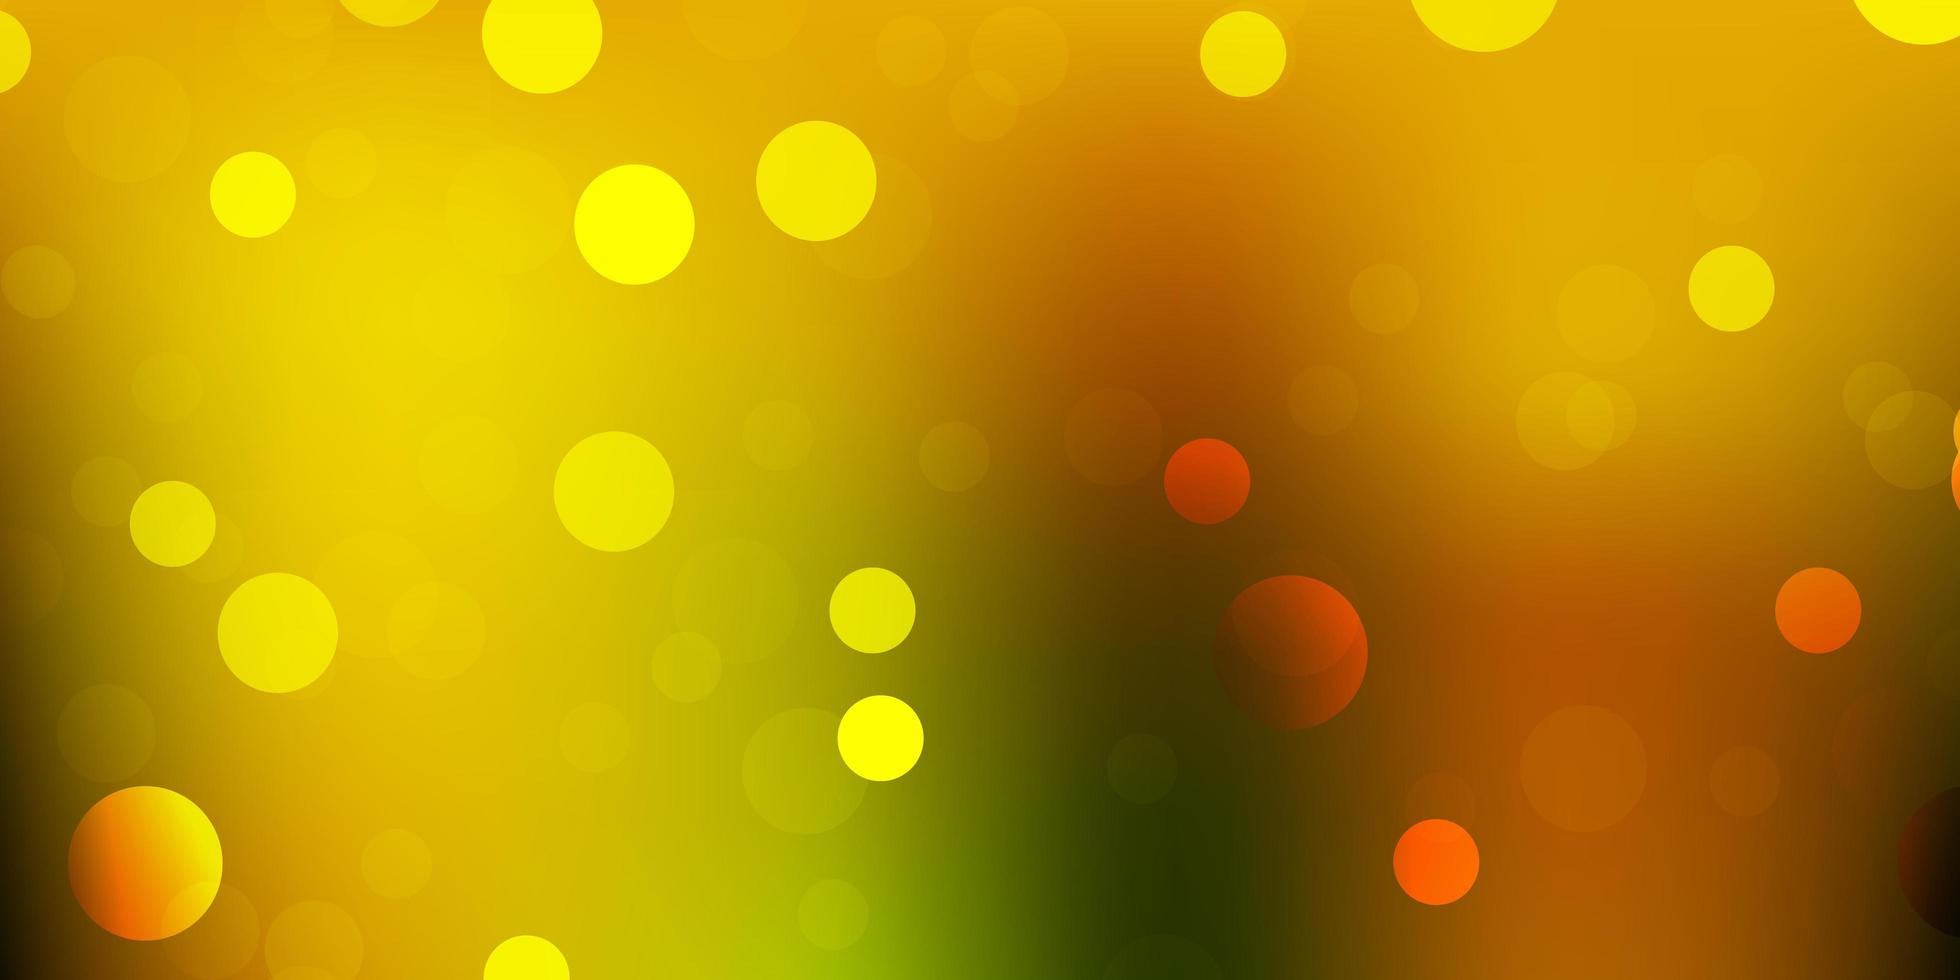 patrón de vector verde claro, amarillo con formas abstractas.